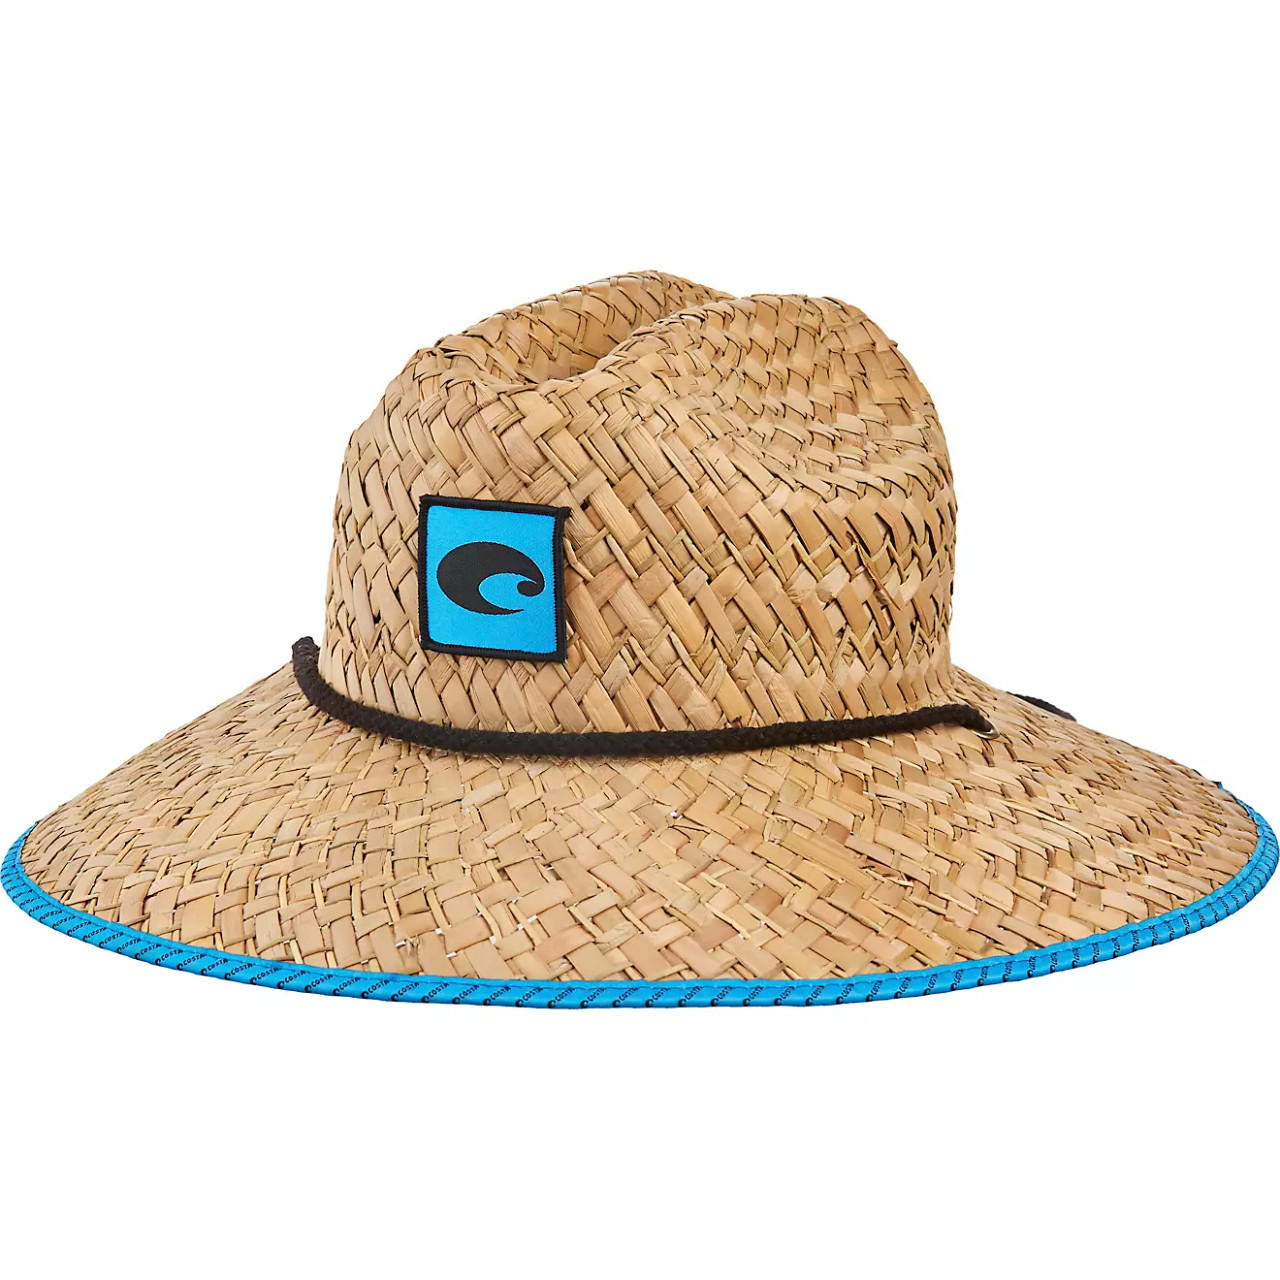 Costa Del Mar Mesh Hat